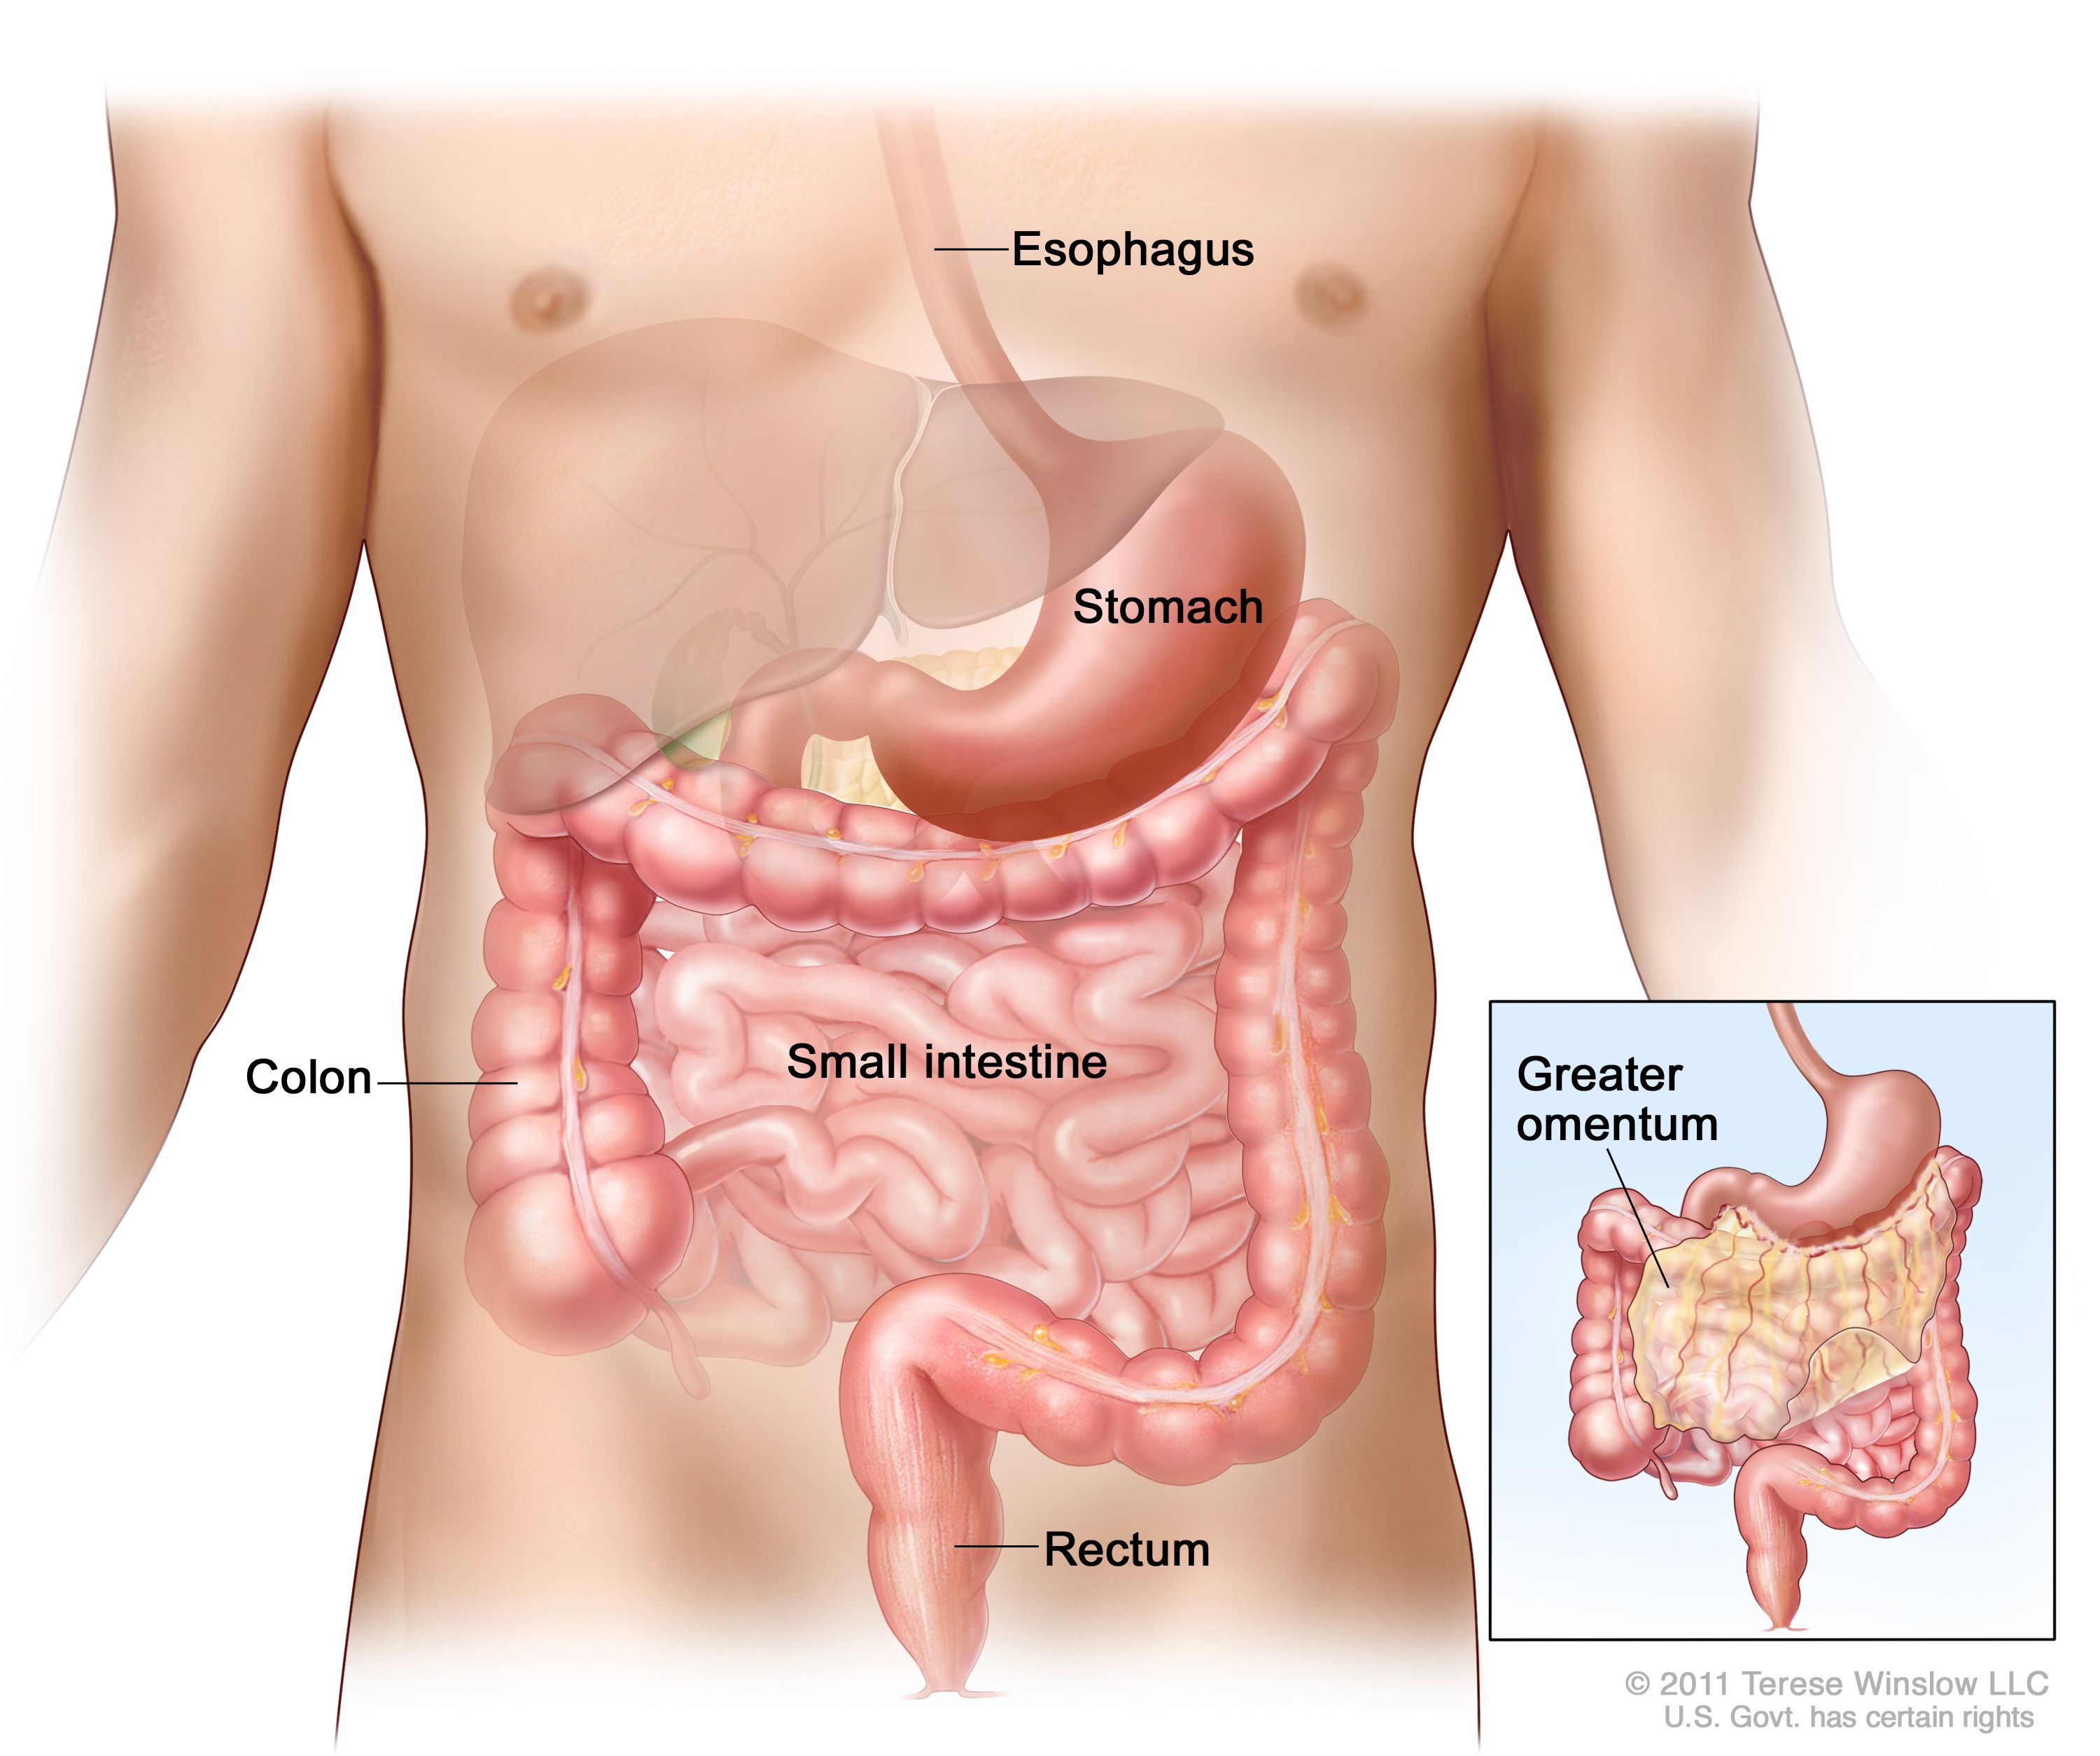 図には、食道、胃、結腸、小腸、直腸などの消化管が示されている。拡大図は、大網（腹部にある胃などの臓器を取り囲むように存在している腹膜で組織の一部）を示している。